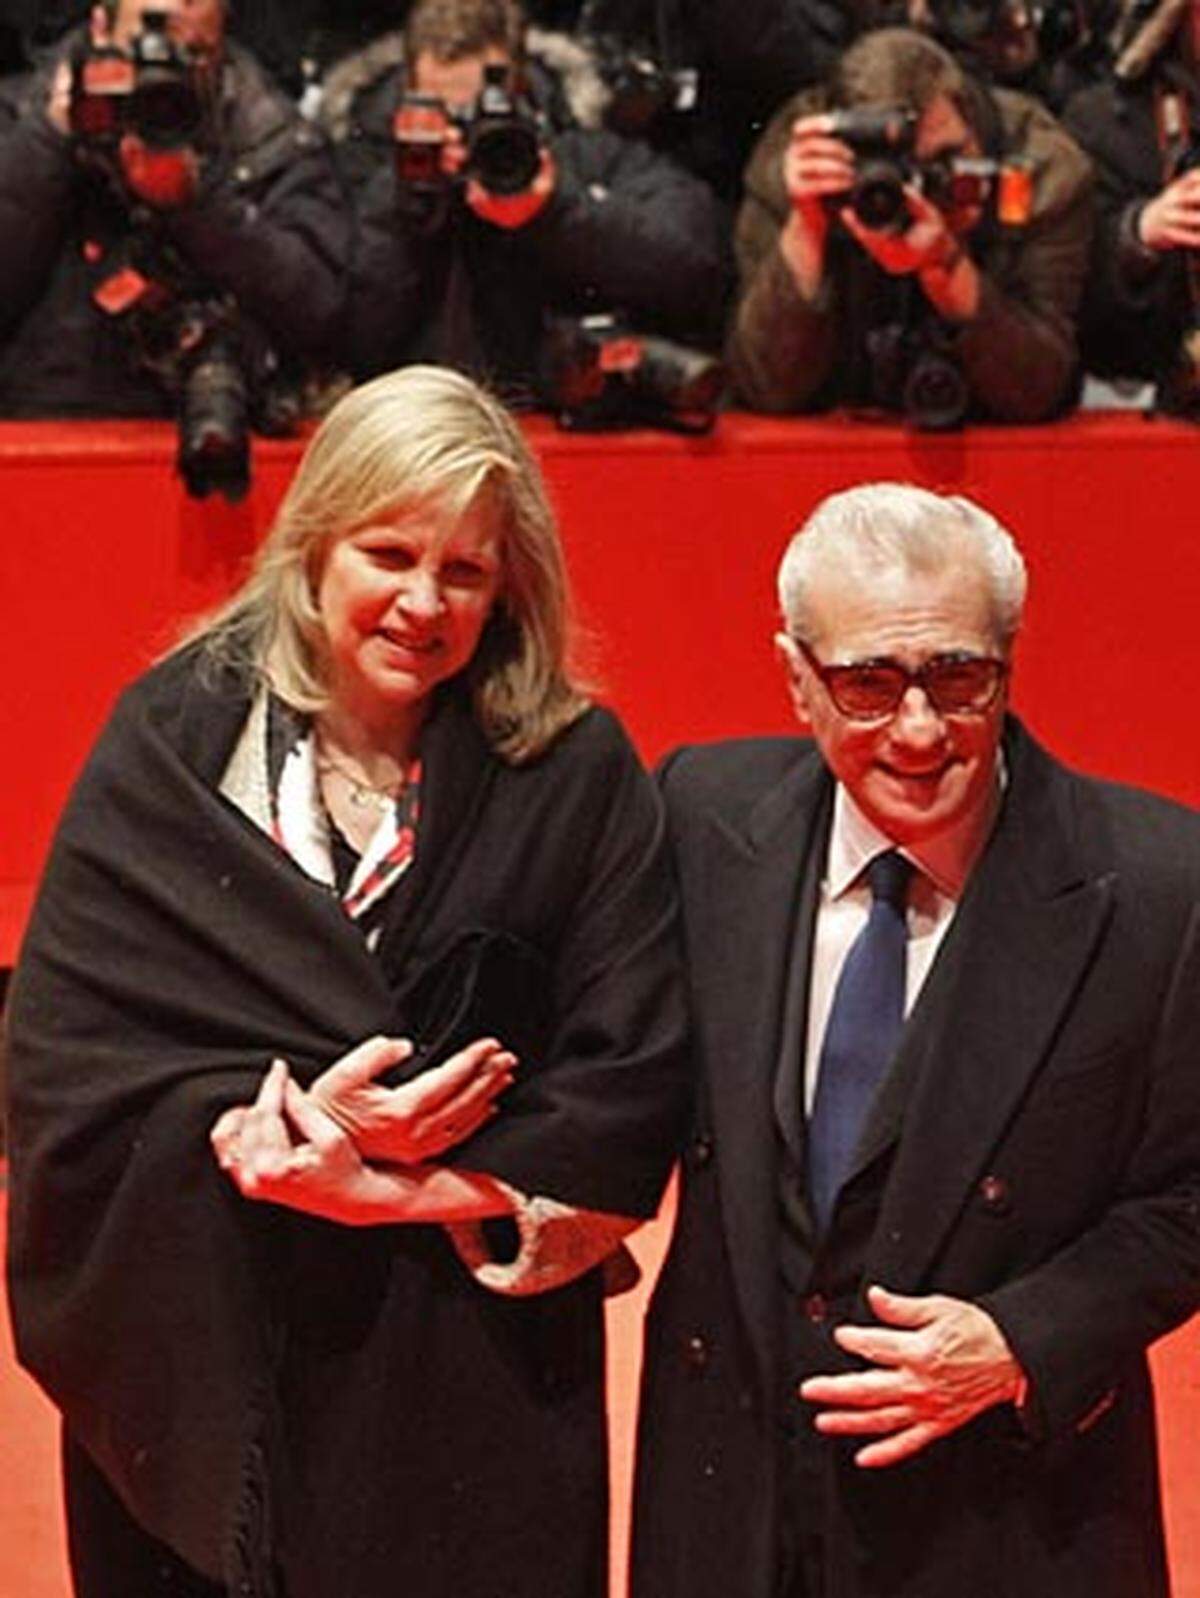 Regisseur Martin Scorsese ist gekommen, um seinen neuen Psycho-Thriller "Shutter Island" zu präsentieren. Mit ihm angereist ist fast die ganze Schauspiel-Crew.